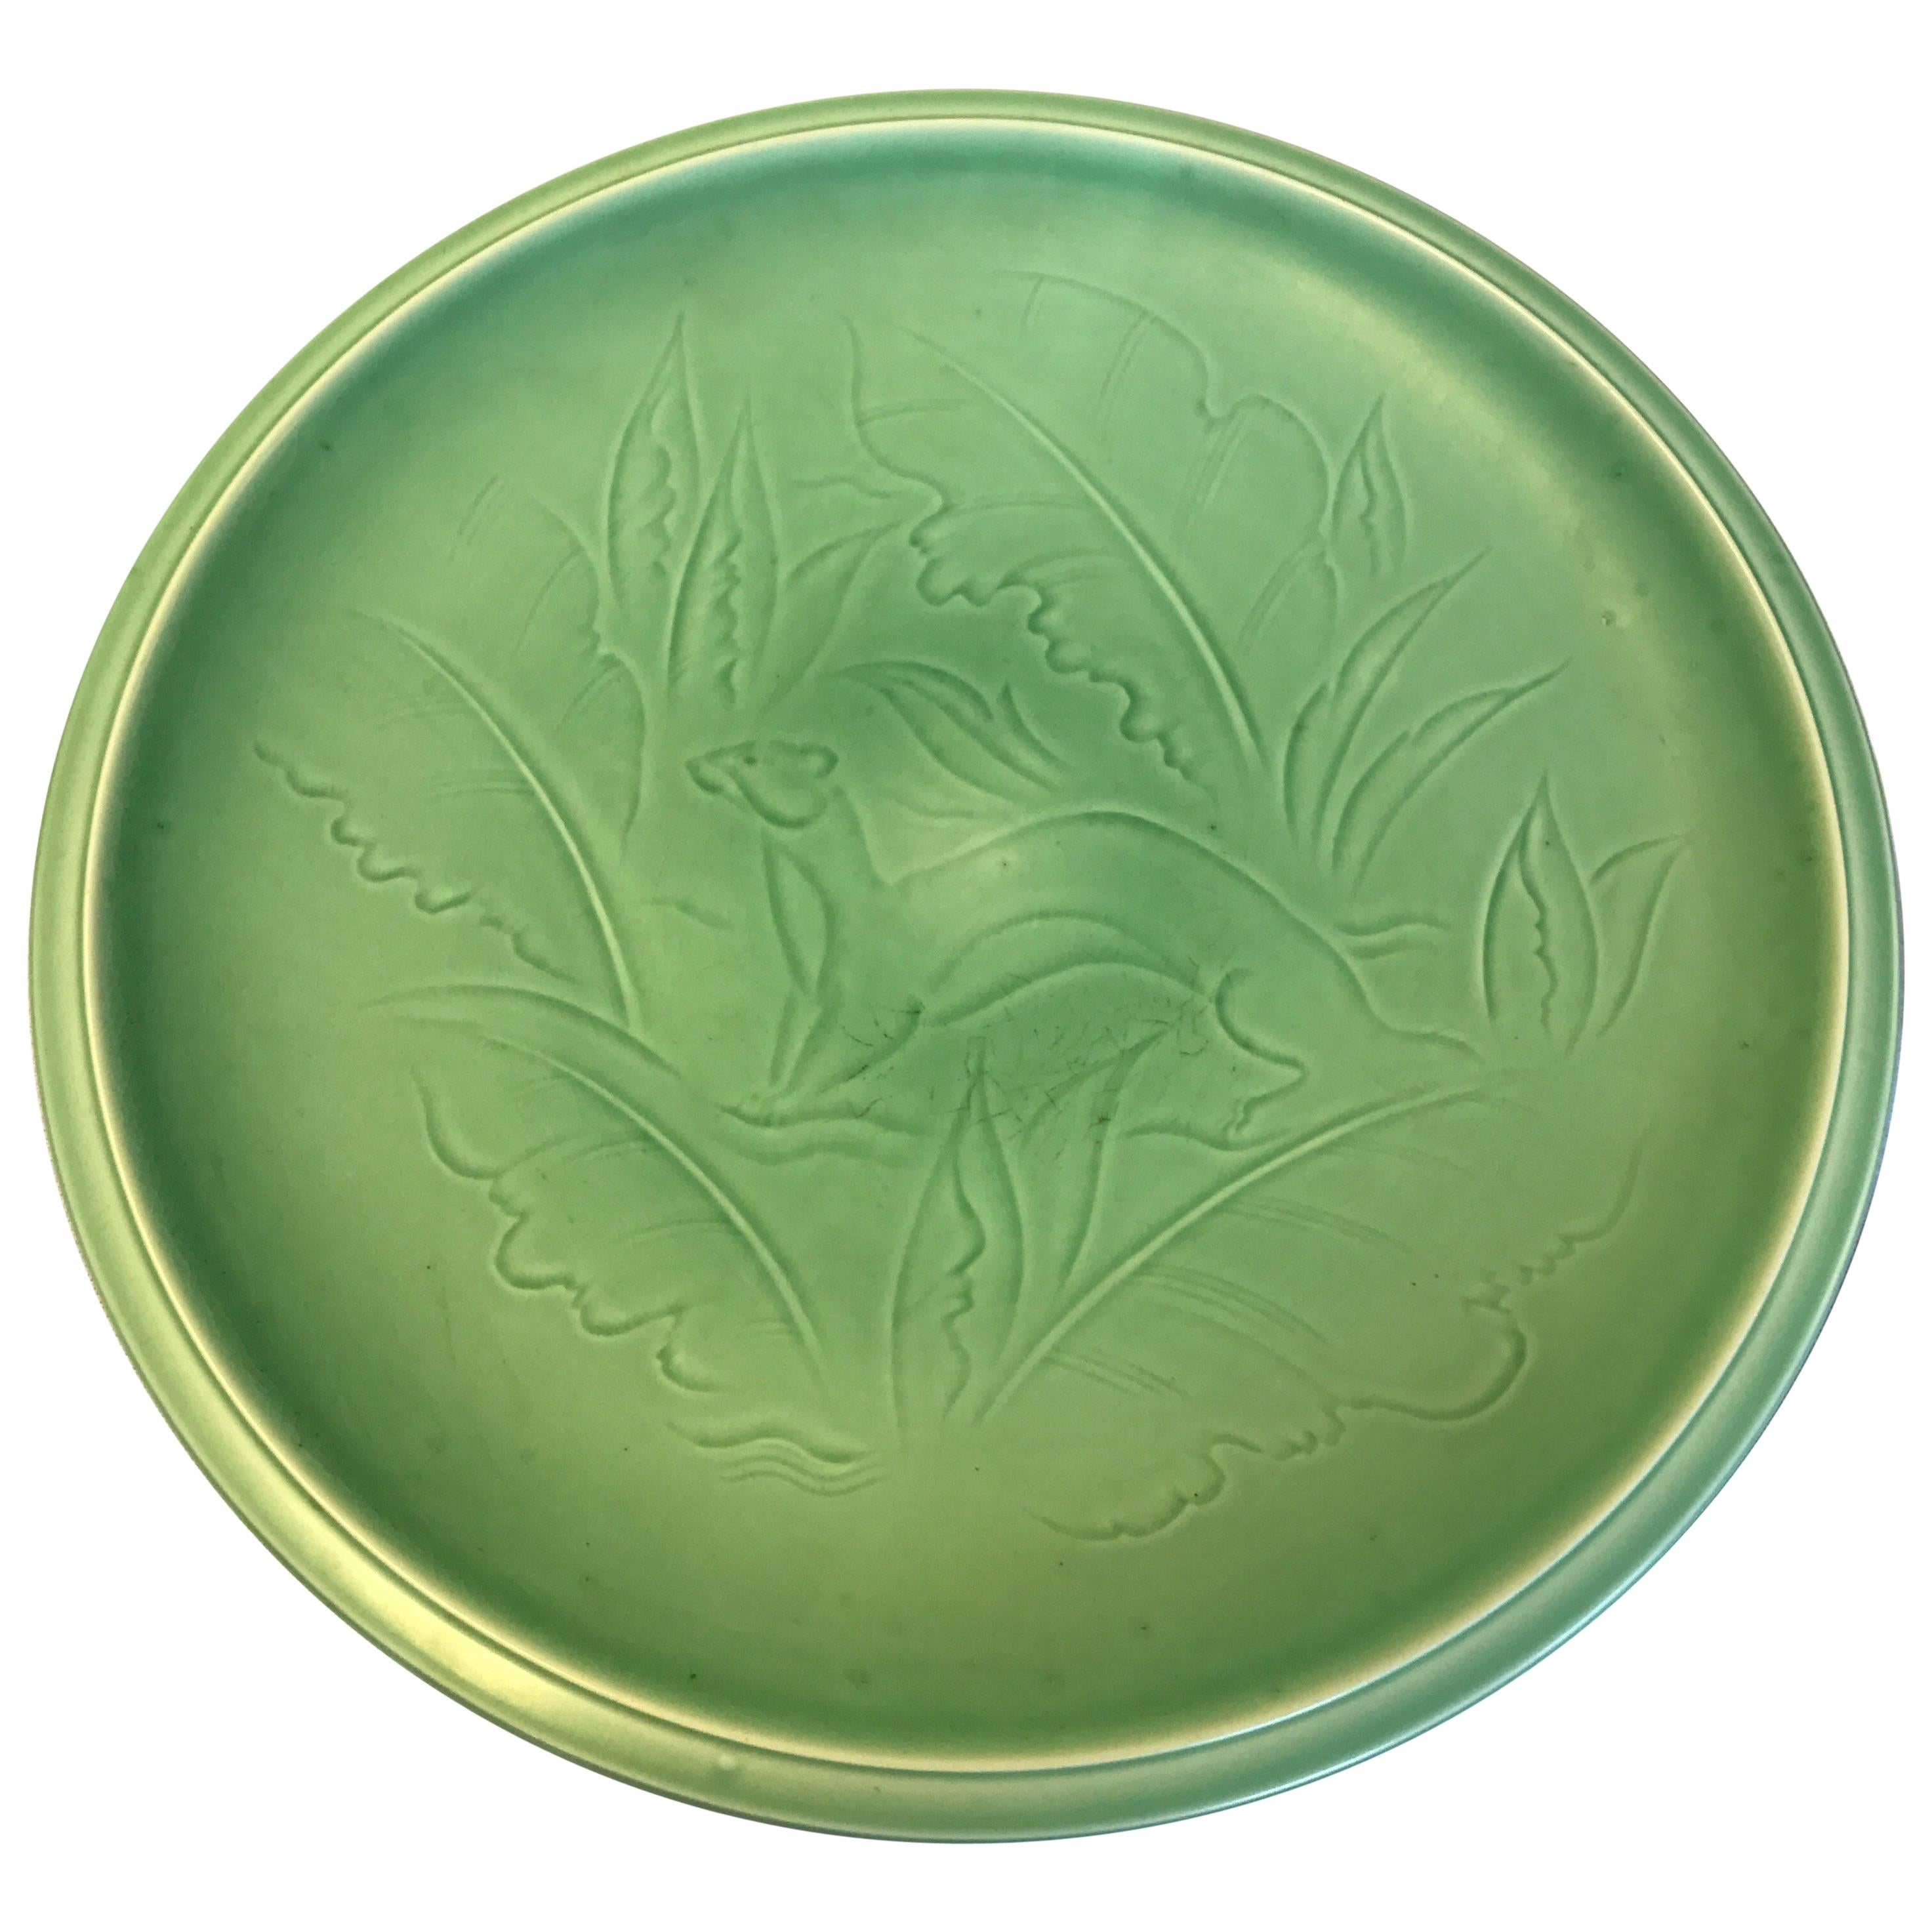 Green Glazed Stoneware Dish, Nils Thorsson from Aluminia, 1950s, Denmark